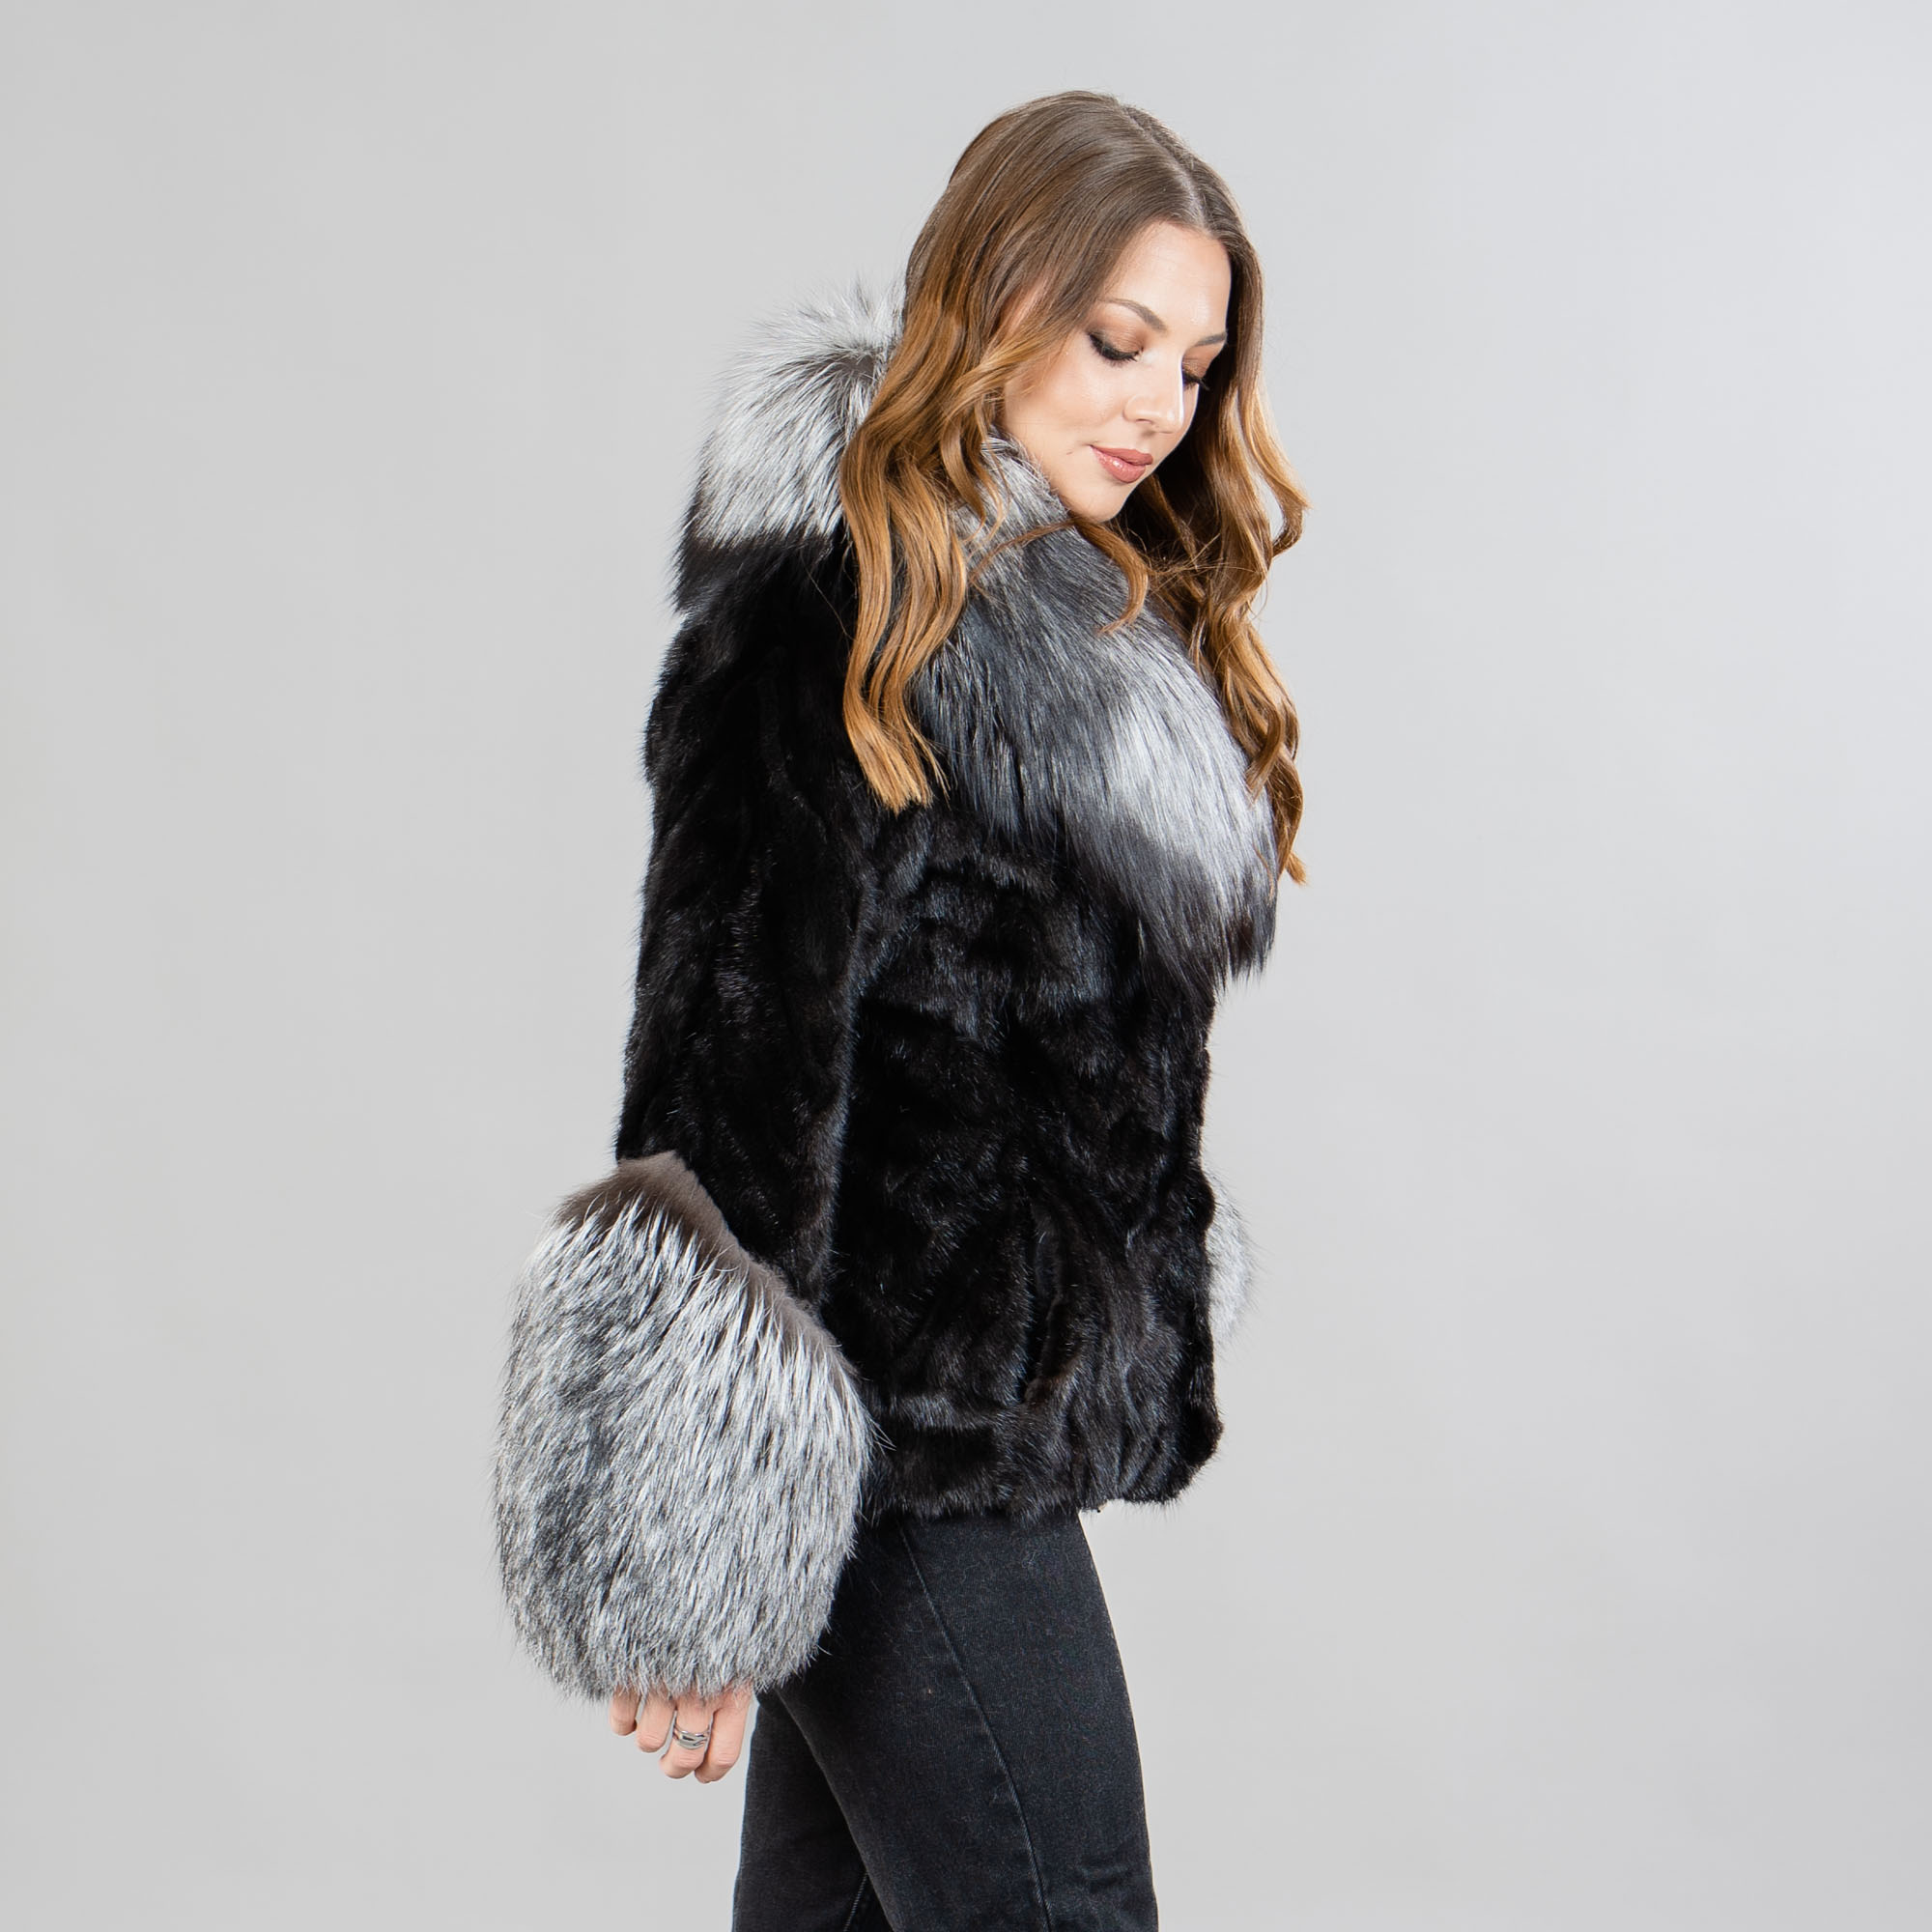 Mink fur jacket with fox fur details in black color